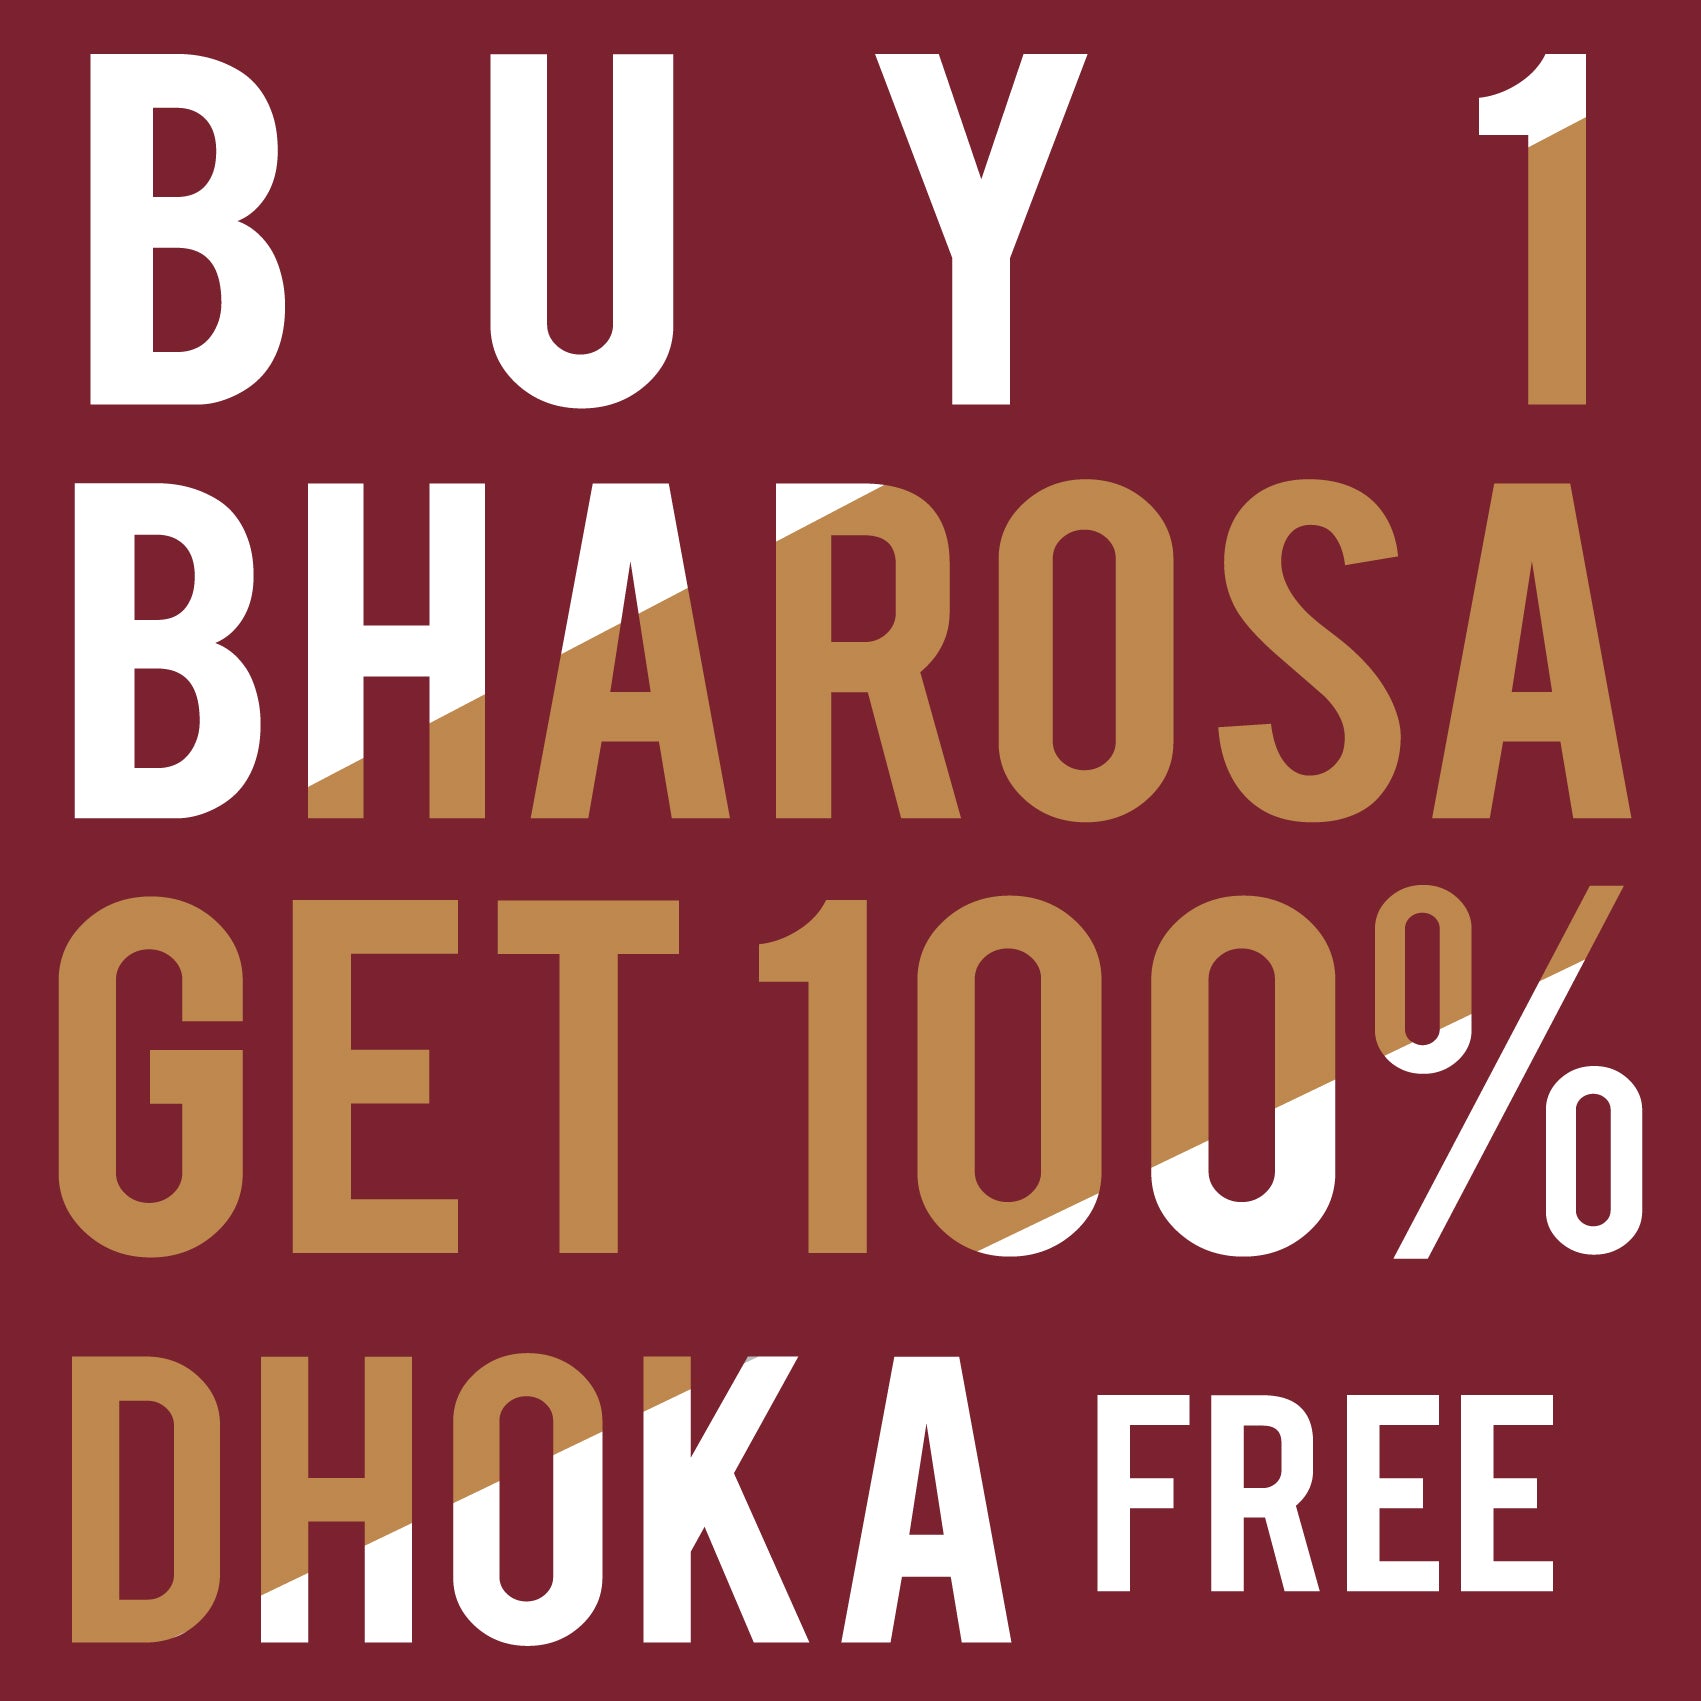 Buy Bharosa Get Dhoka Free Reactr Tshirts Free - Eyewearlabs